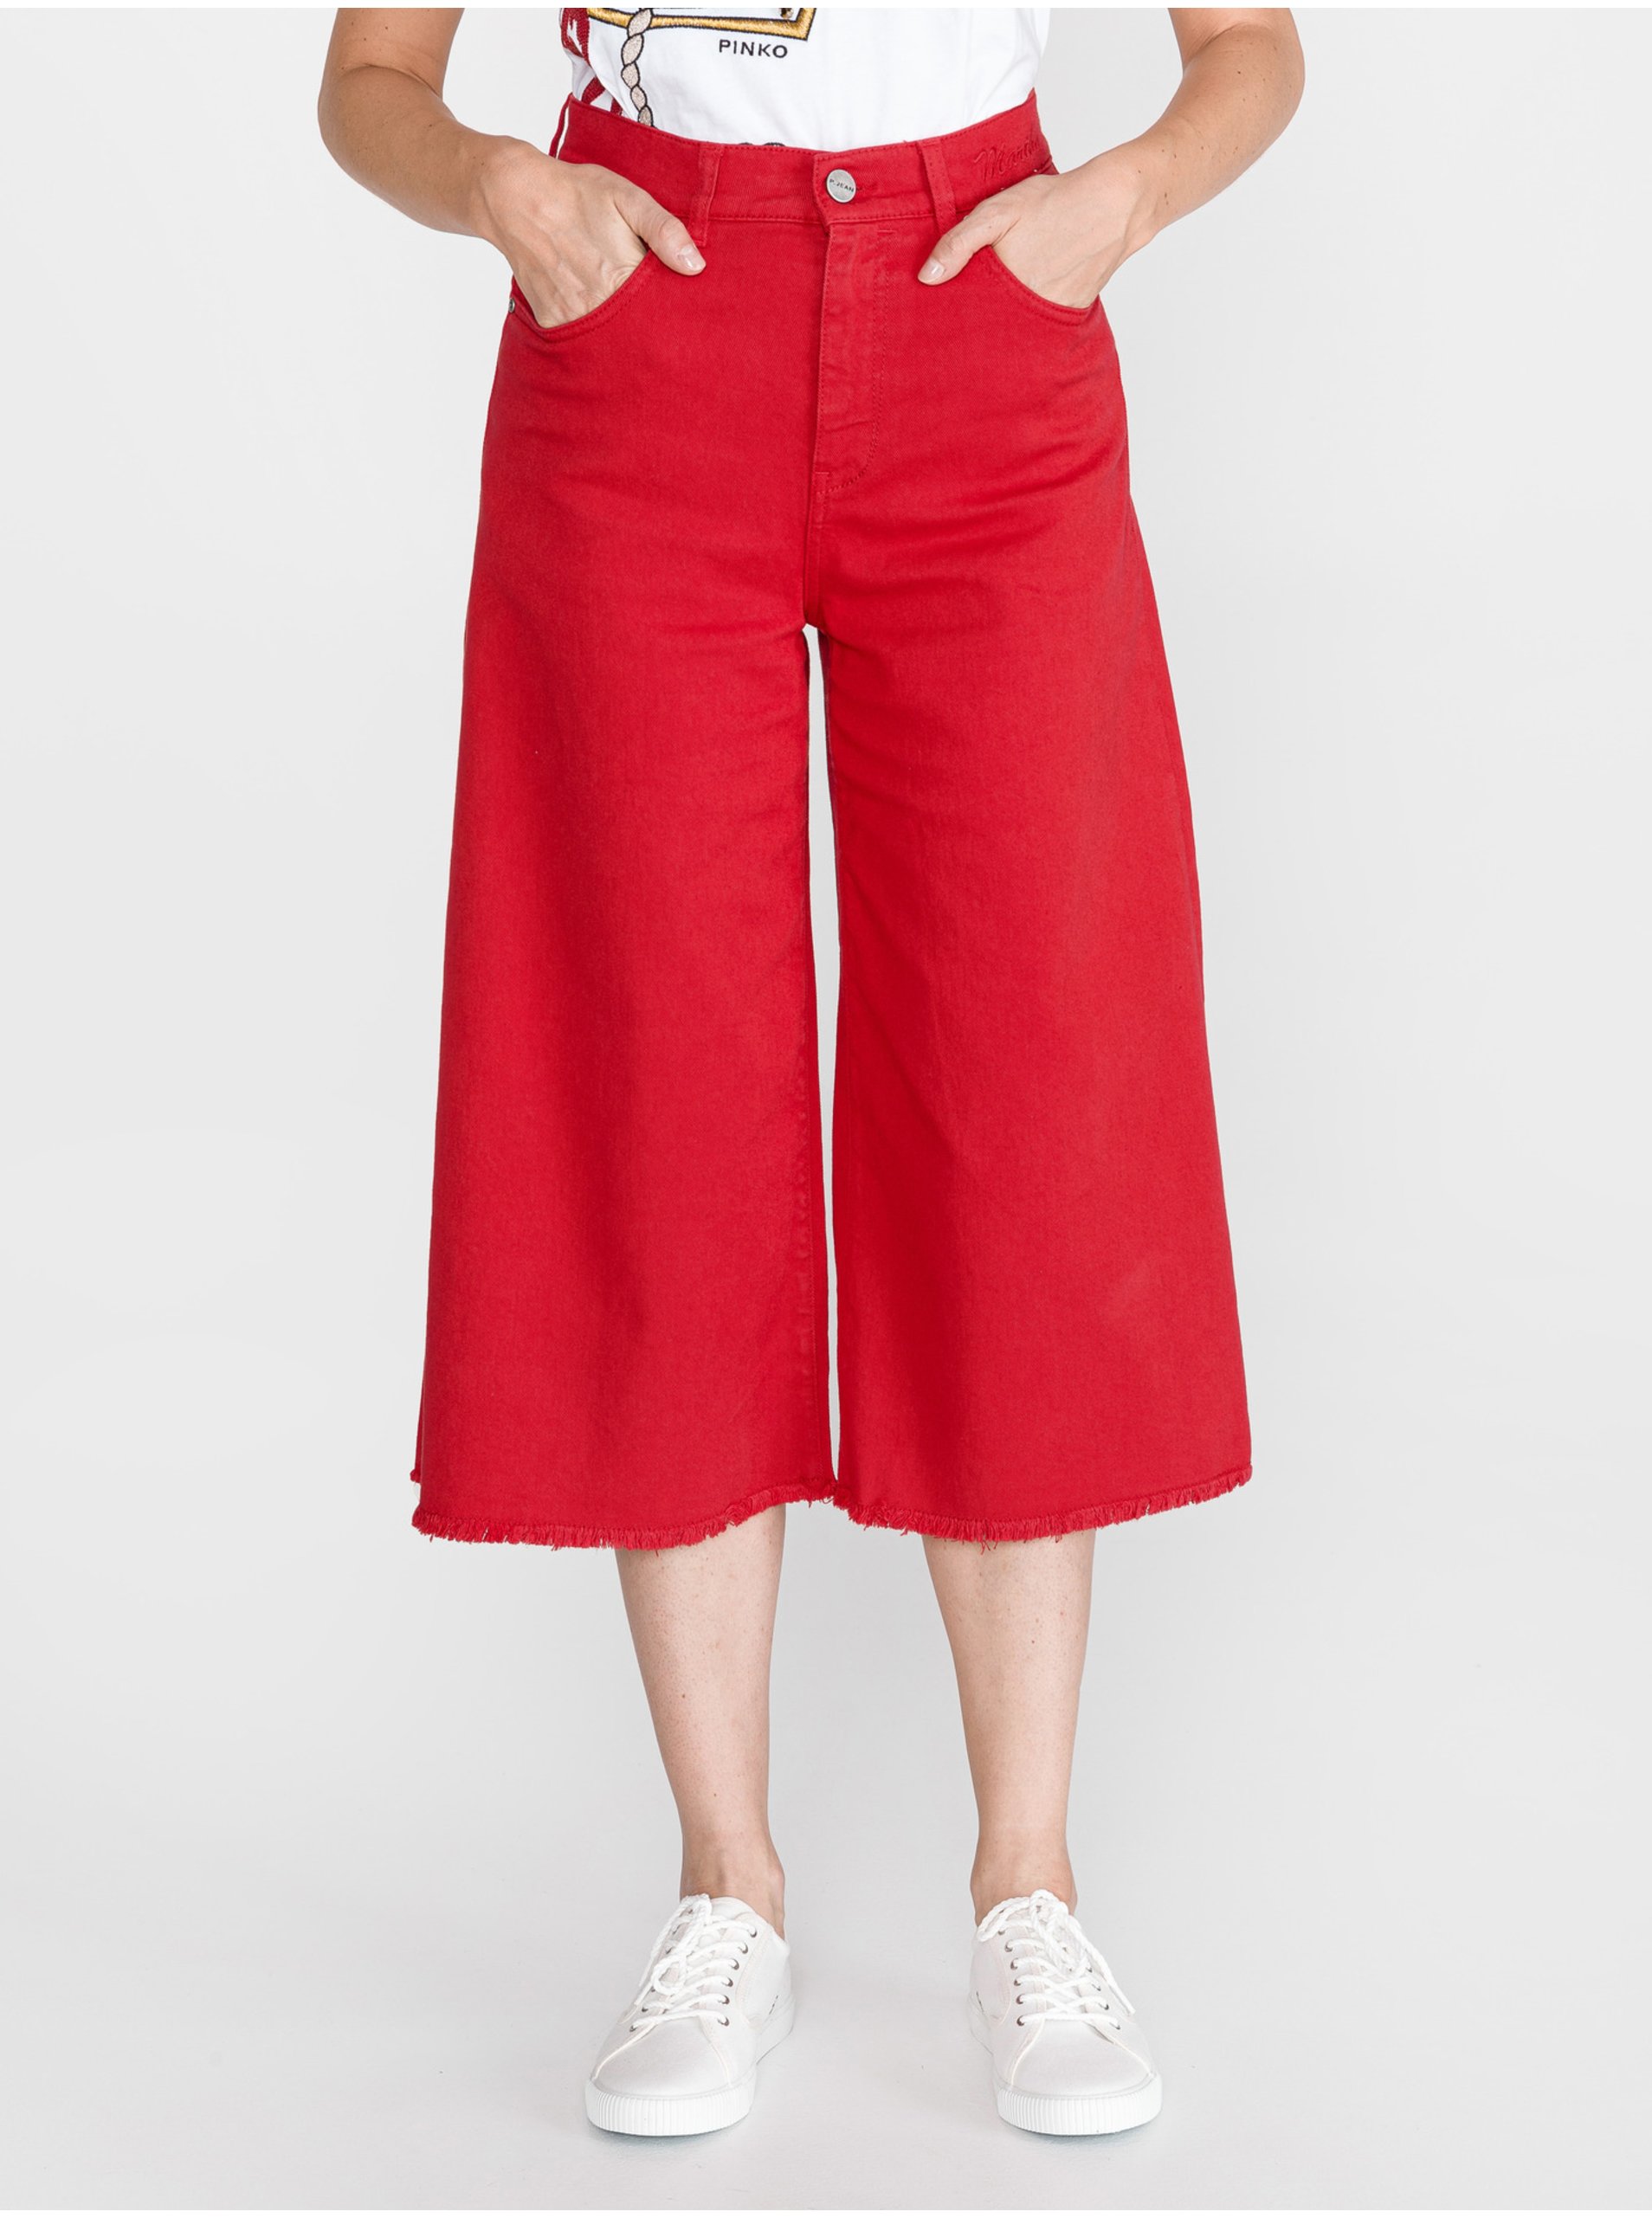 Lacno Nohavice pre ženy Pinko - červená